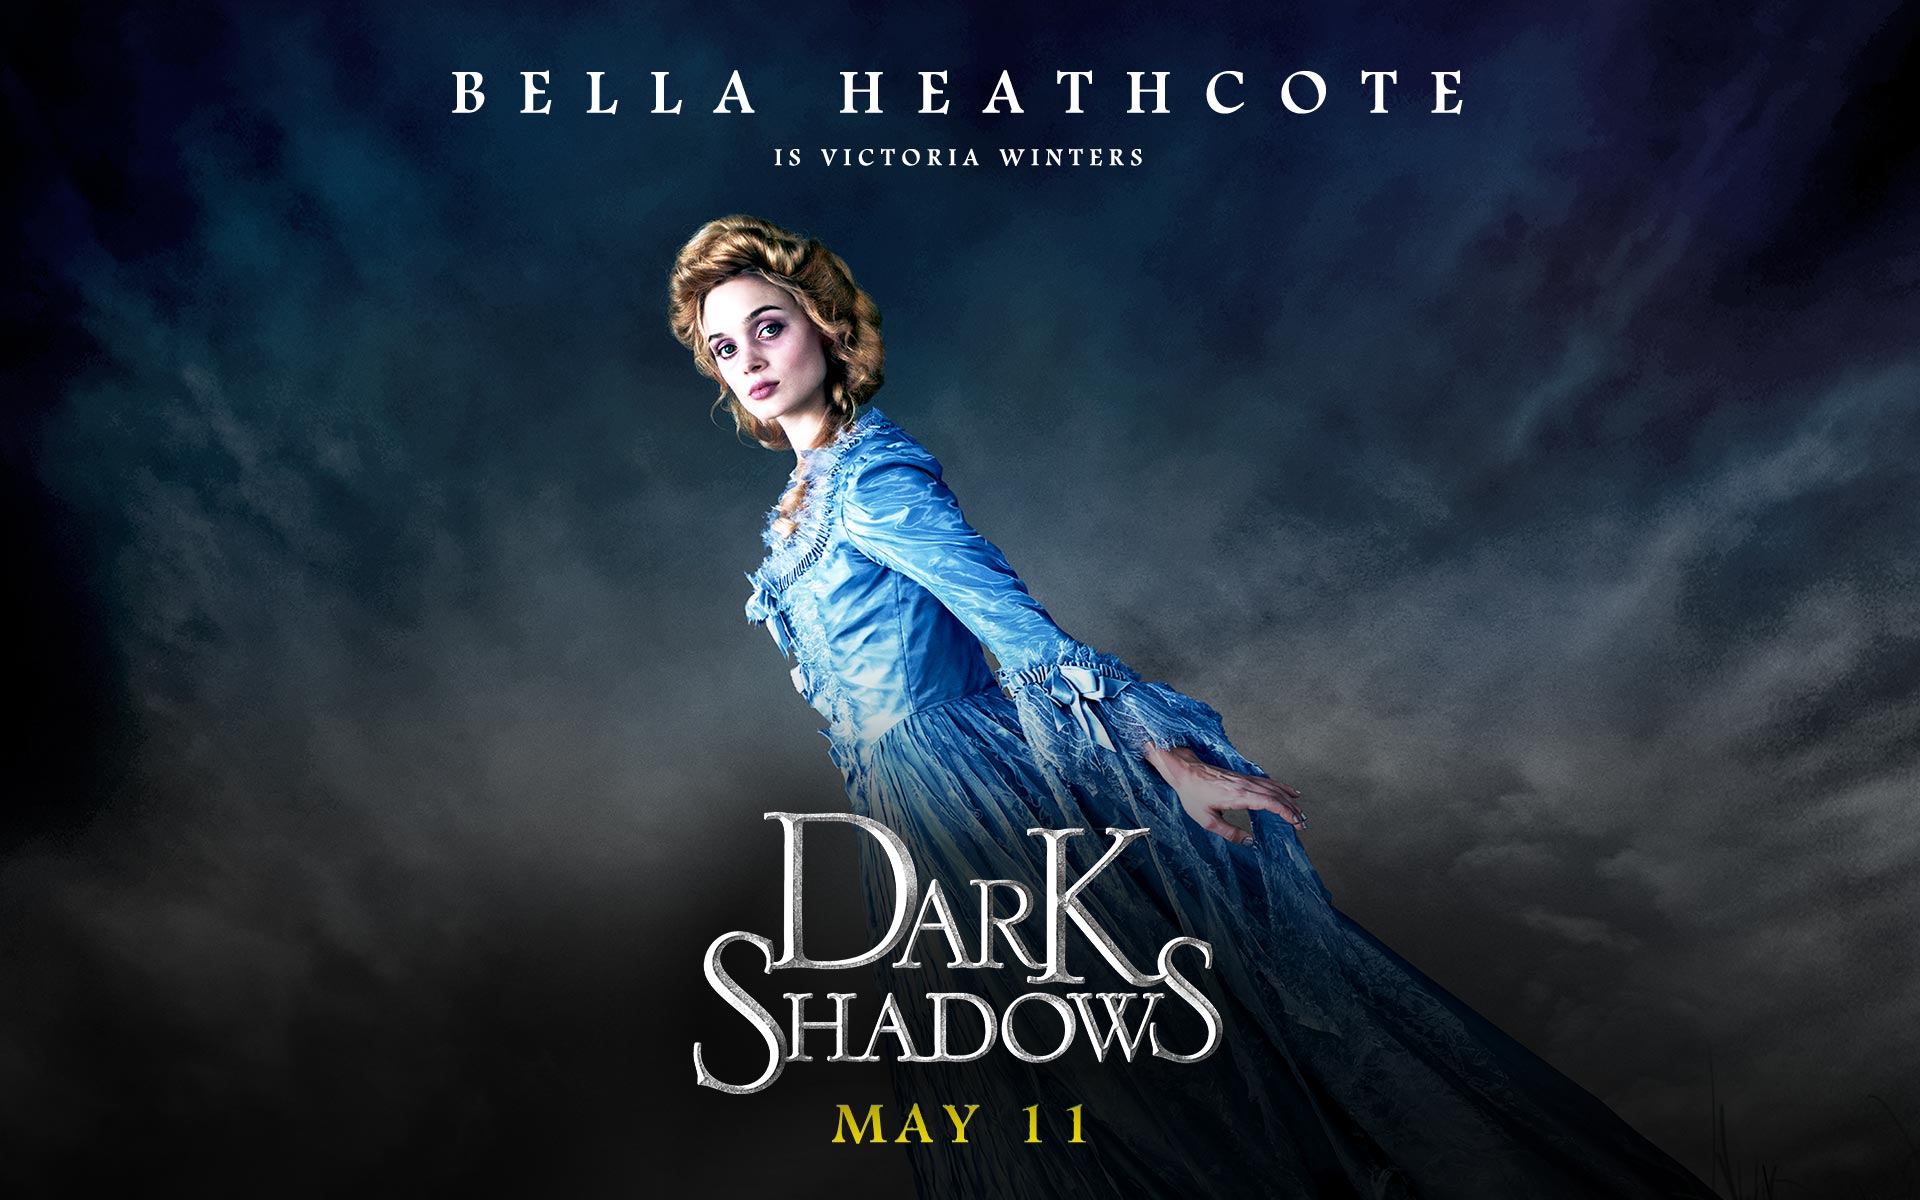 Free download Dark Shadows wallpapers 19201200 Bella Heathcote as Victoria ...